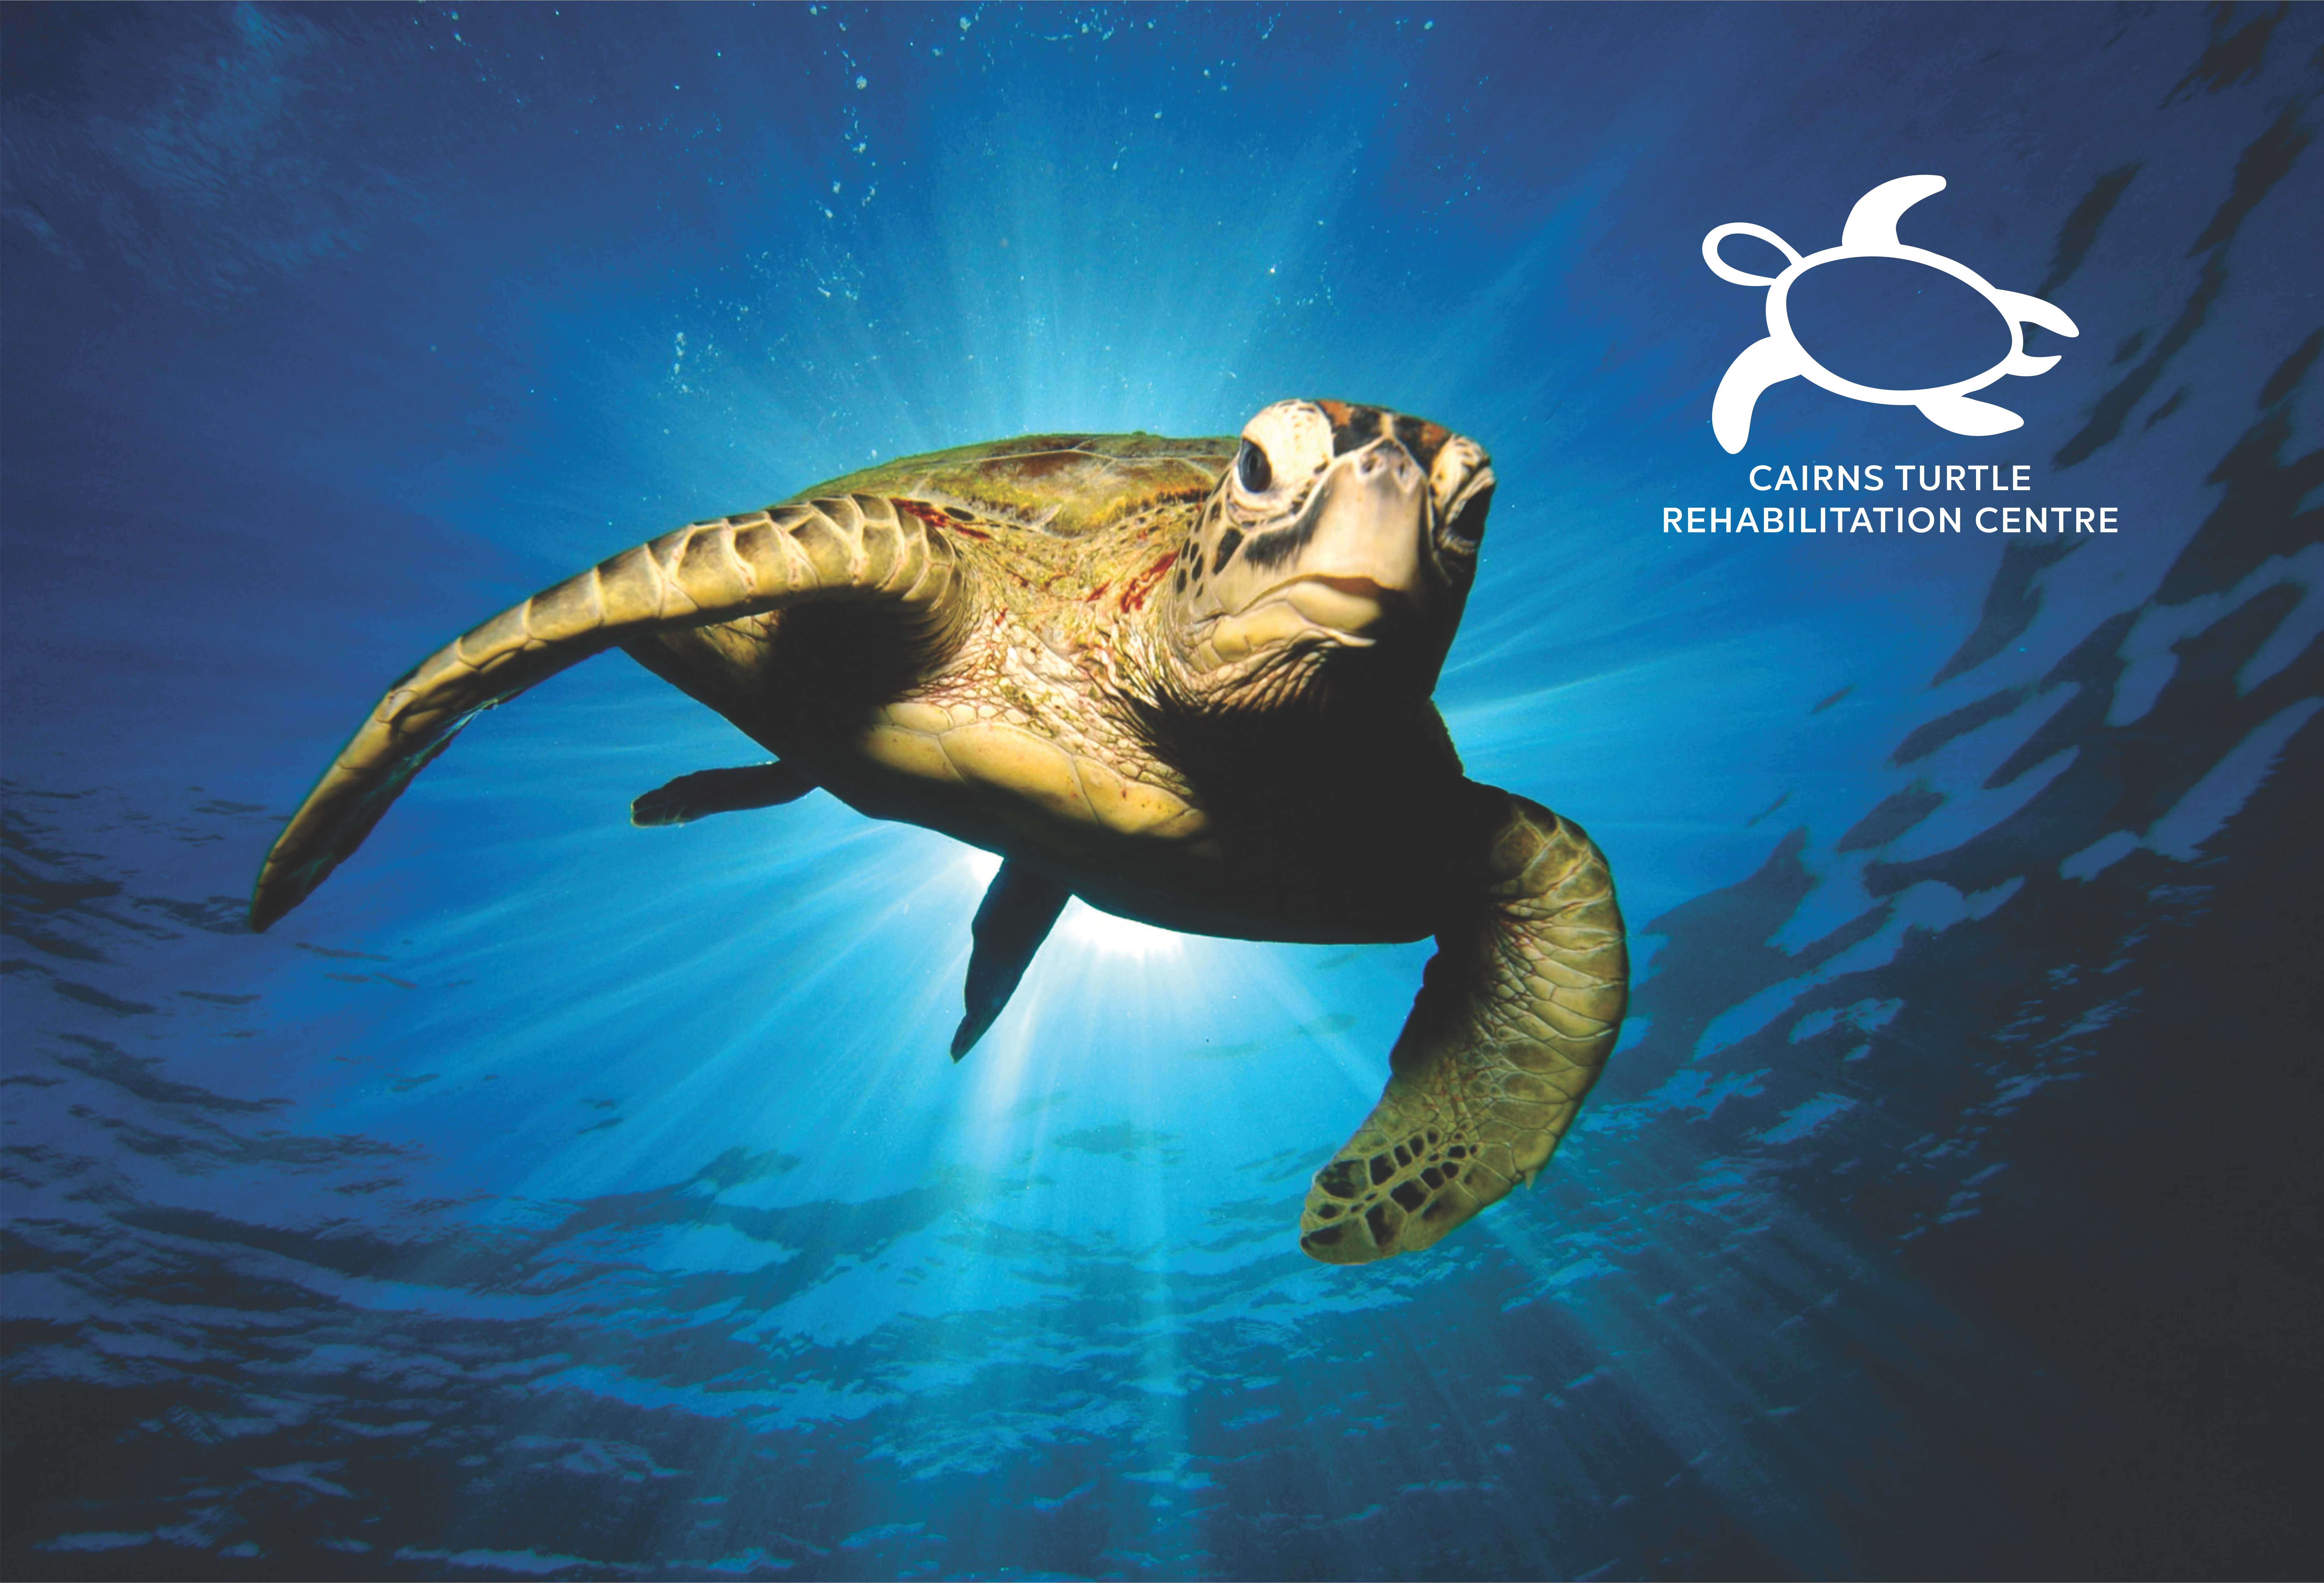 Cairns Turtle rehabilitation centre graphic